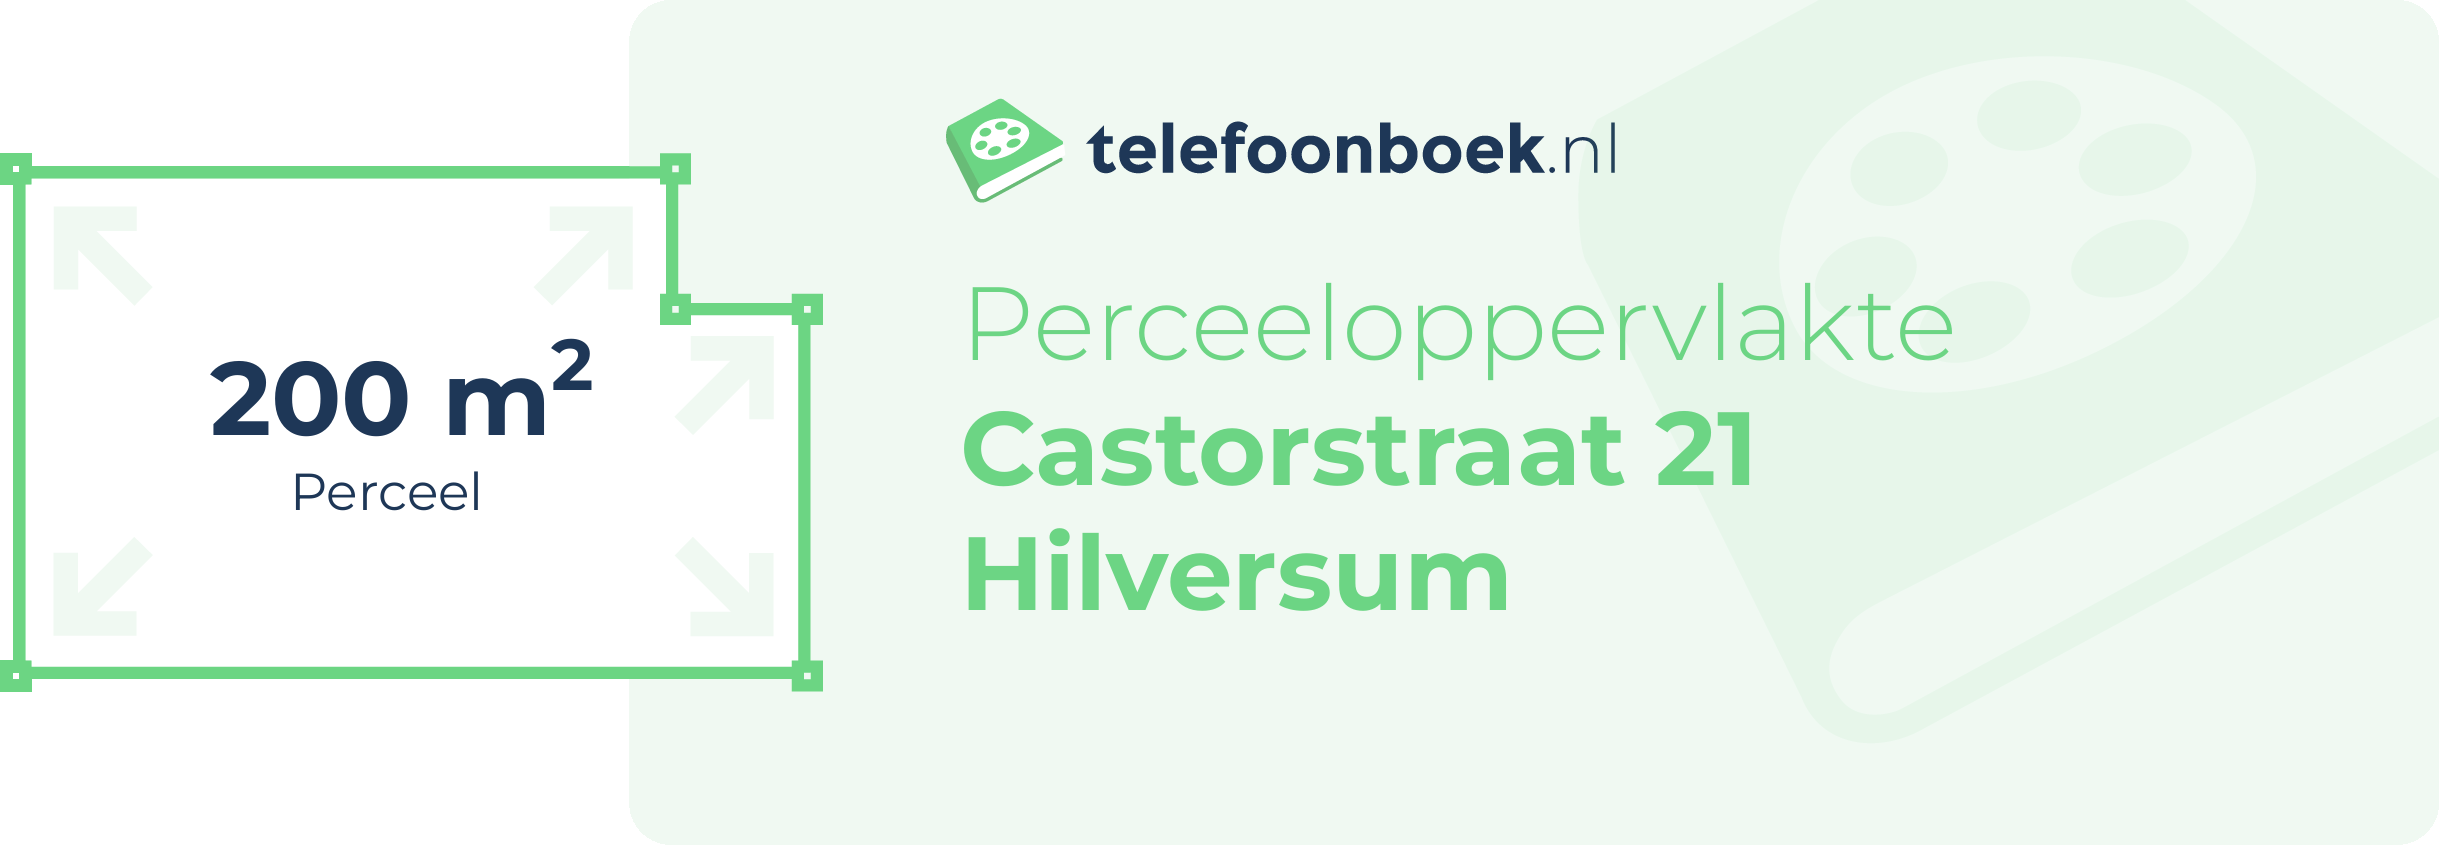 Perceeloppervlakte Castorstraat 21 Hilversum